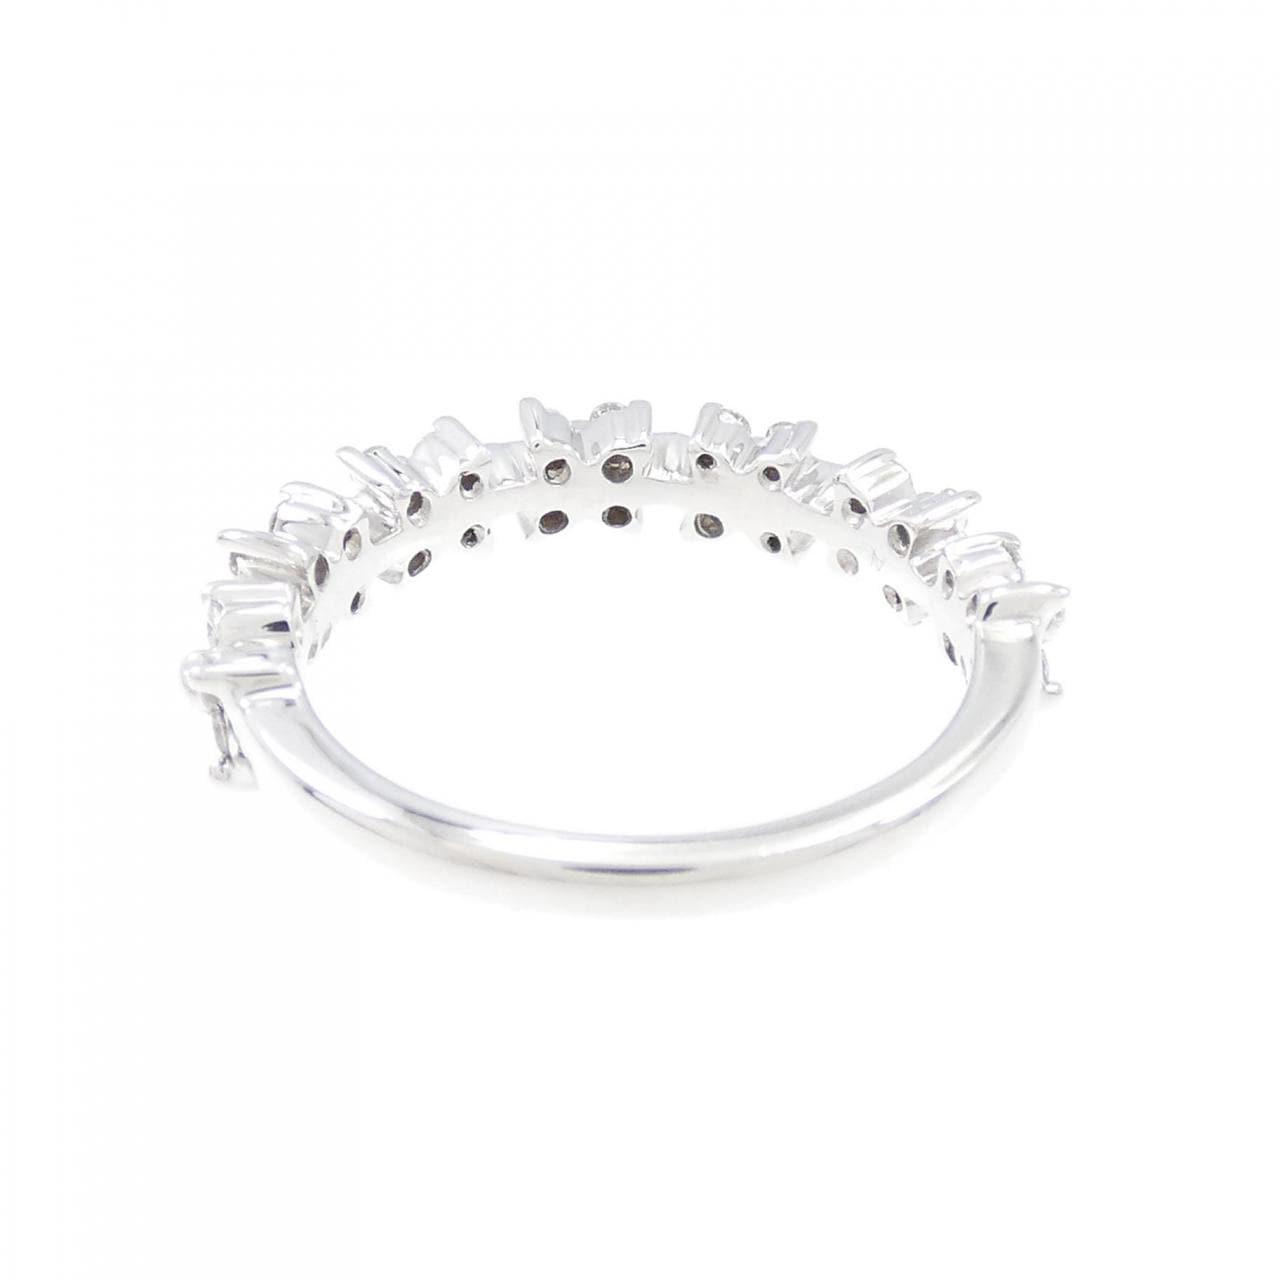 K18WG flower Diamond ring